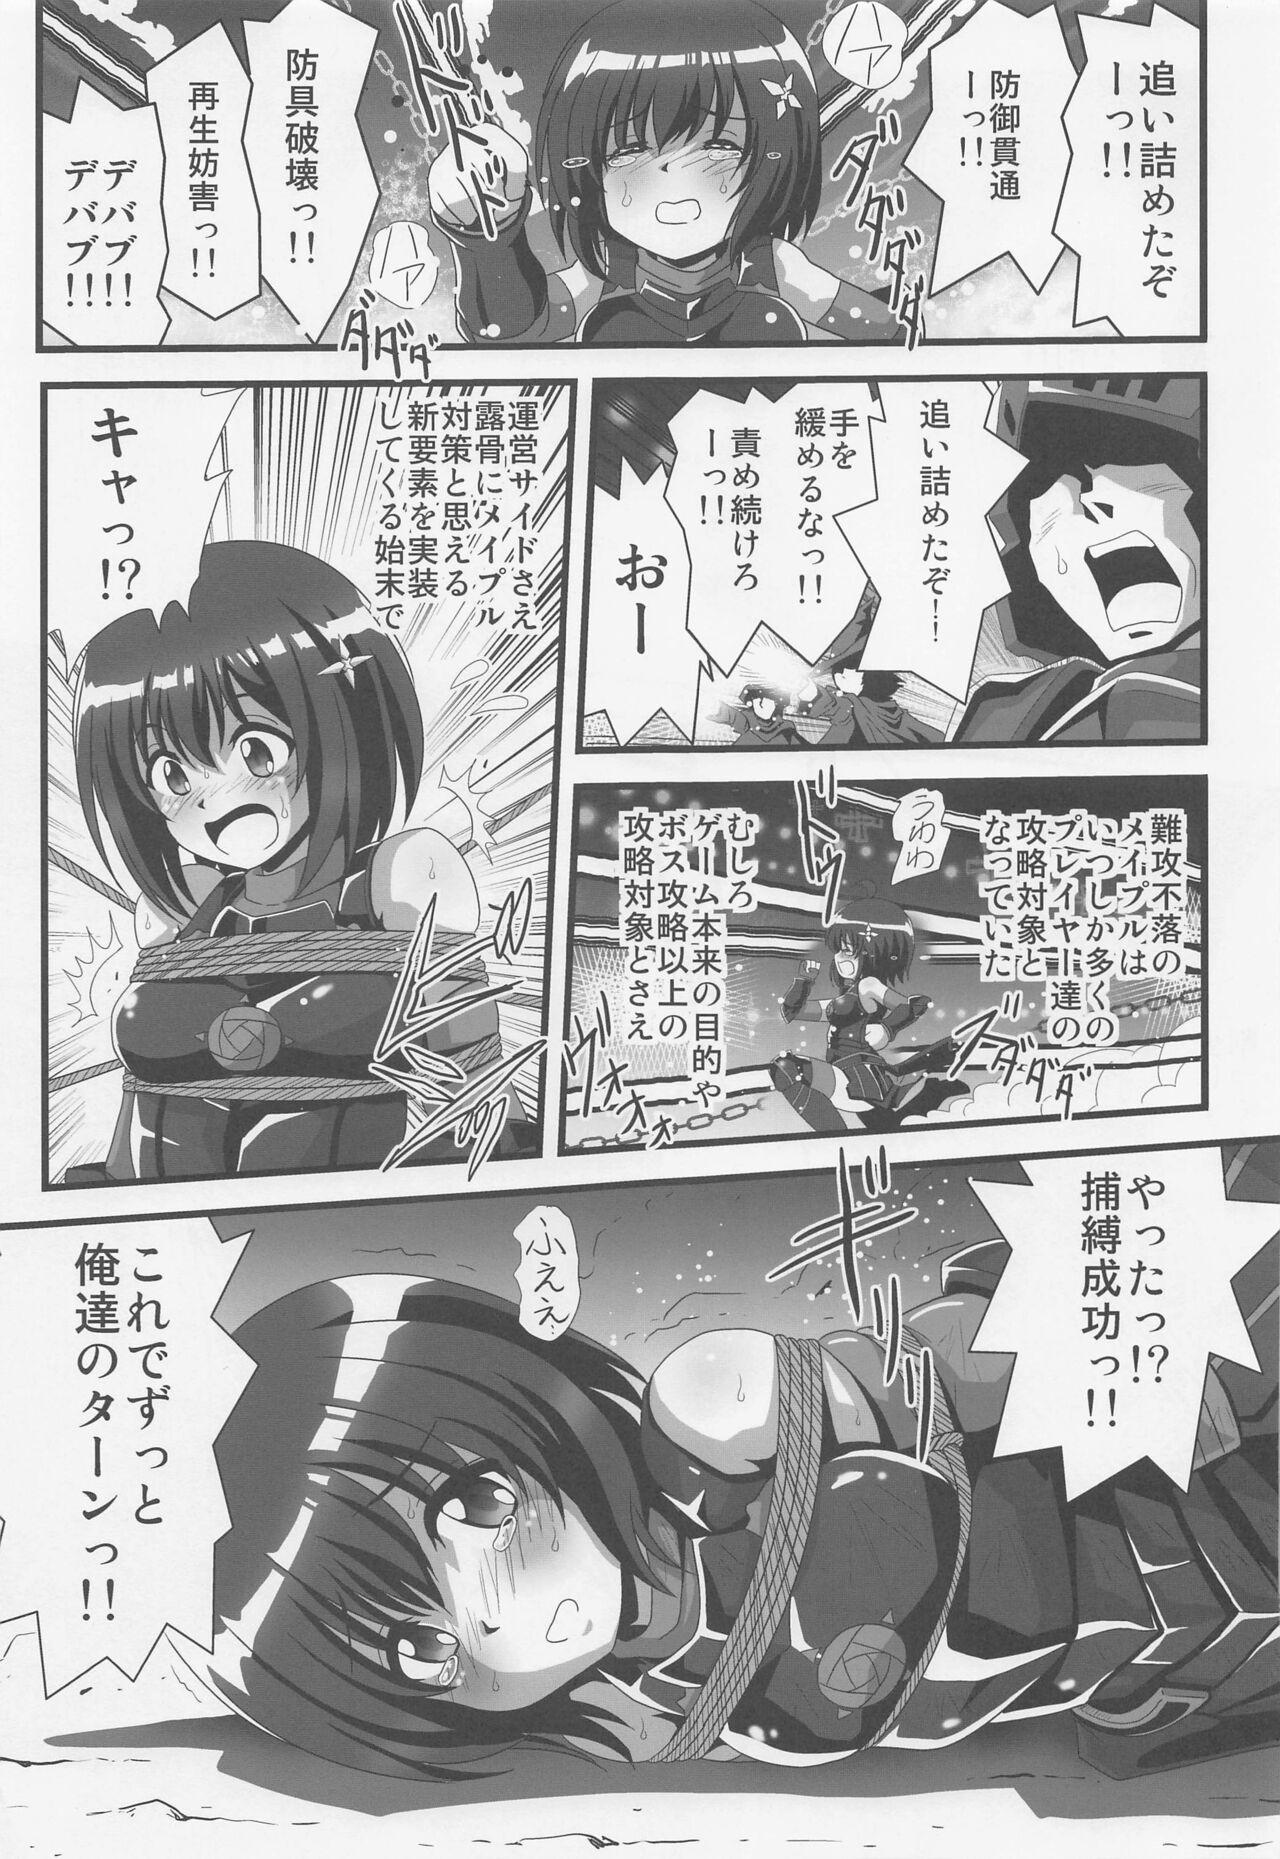 Gostoso Itai no wa Iyarashii node 1 - Itai no wa iya nano de bougyoryoku ni kyokufuri shitai to omoimasu. Sextape - Page 2